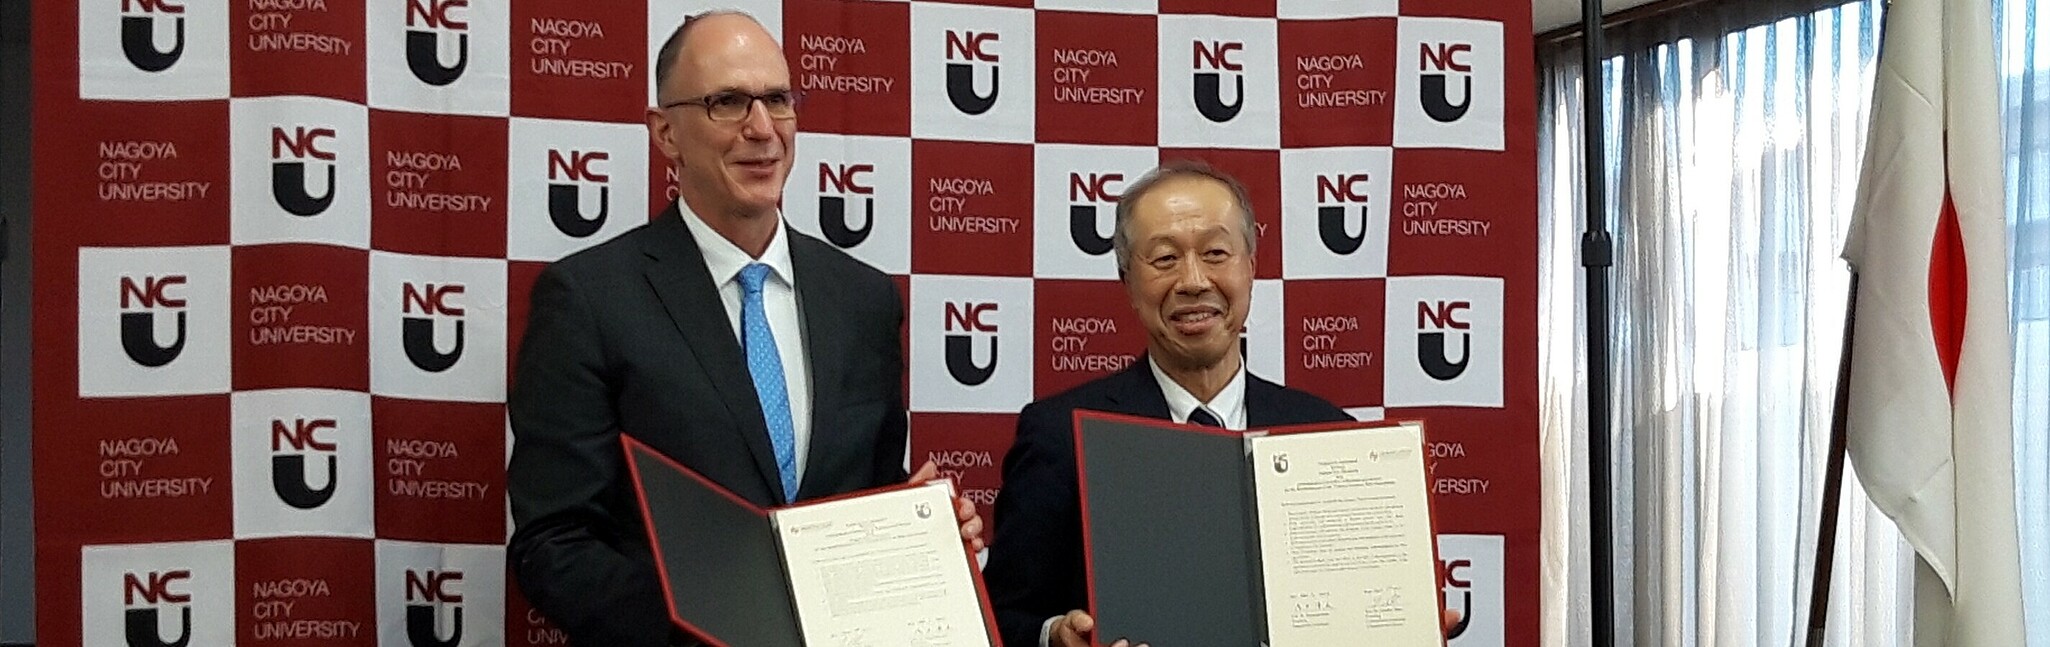 Unterzeichnung des Abkommens zur intensivierten Partnerschaft der HWG LU und der Nagoya City University durch die Präsidenten (v.l.) Prof. Dr. Gunther Piller und Prof. Dr. Kiyofumi Asai. (Bild: NCU)